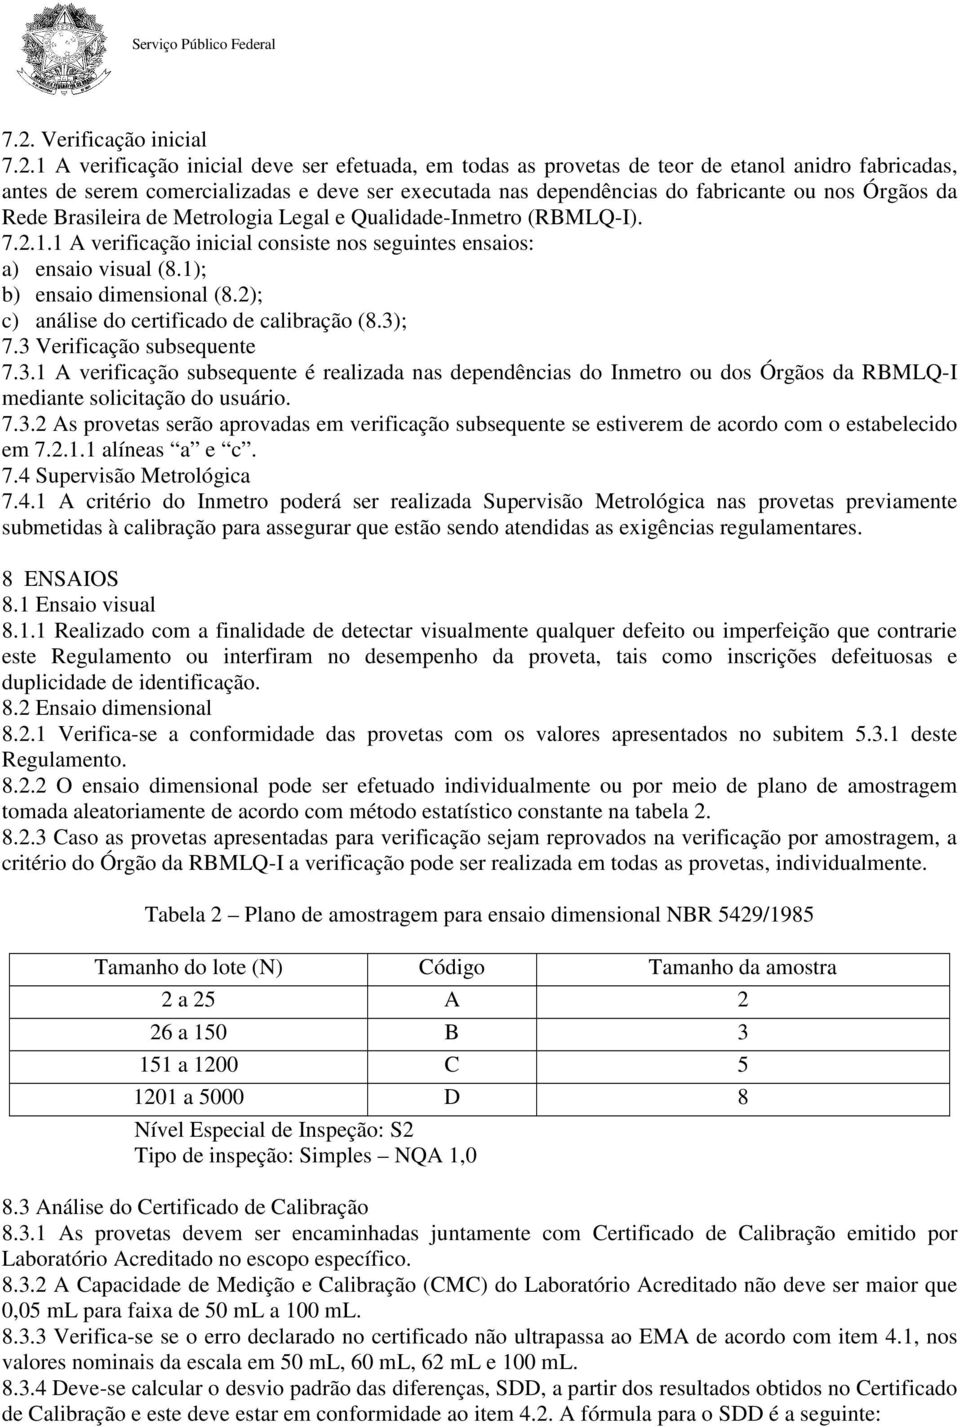 1); b) ensaio dimensional (8.2); c) análise do certificado de calibração (8.3)